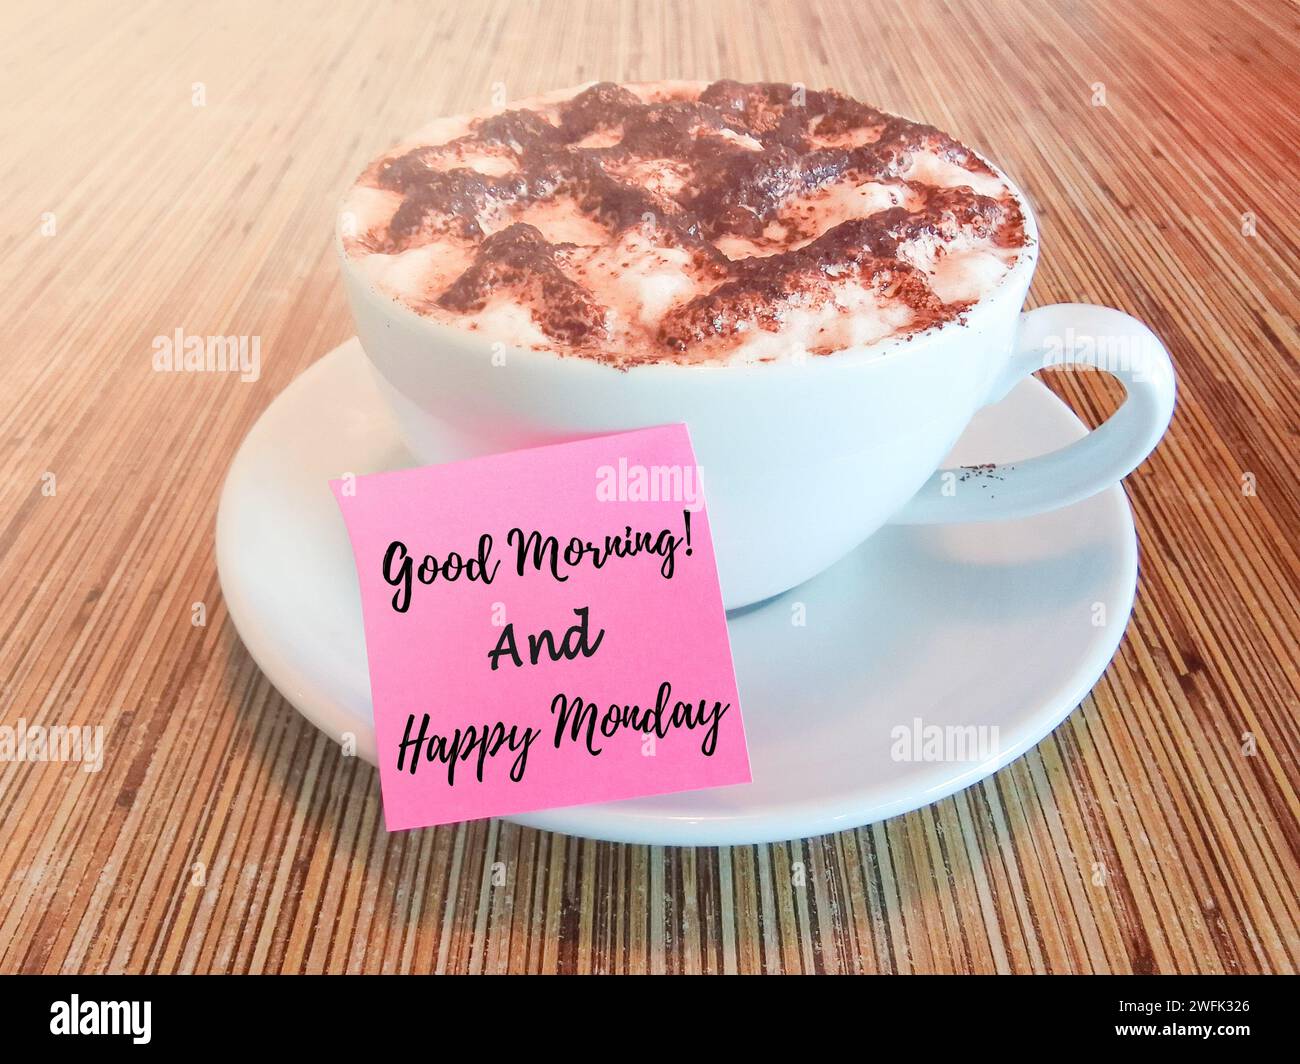 Guten Morgen und Happy monday Text geschrieben auf einem Haftnotiz mit heißer Schokolade auf einem Holztisch. Stockfoto